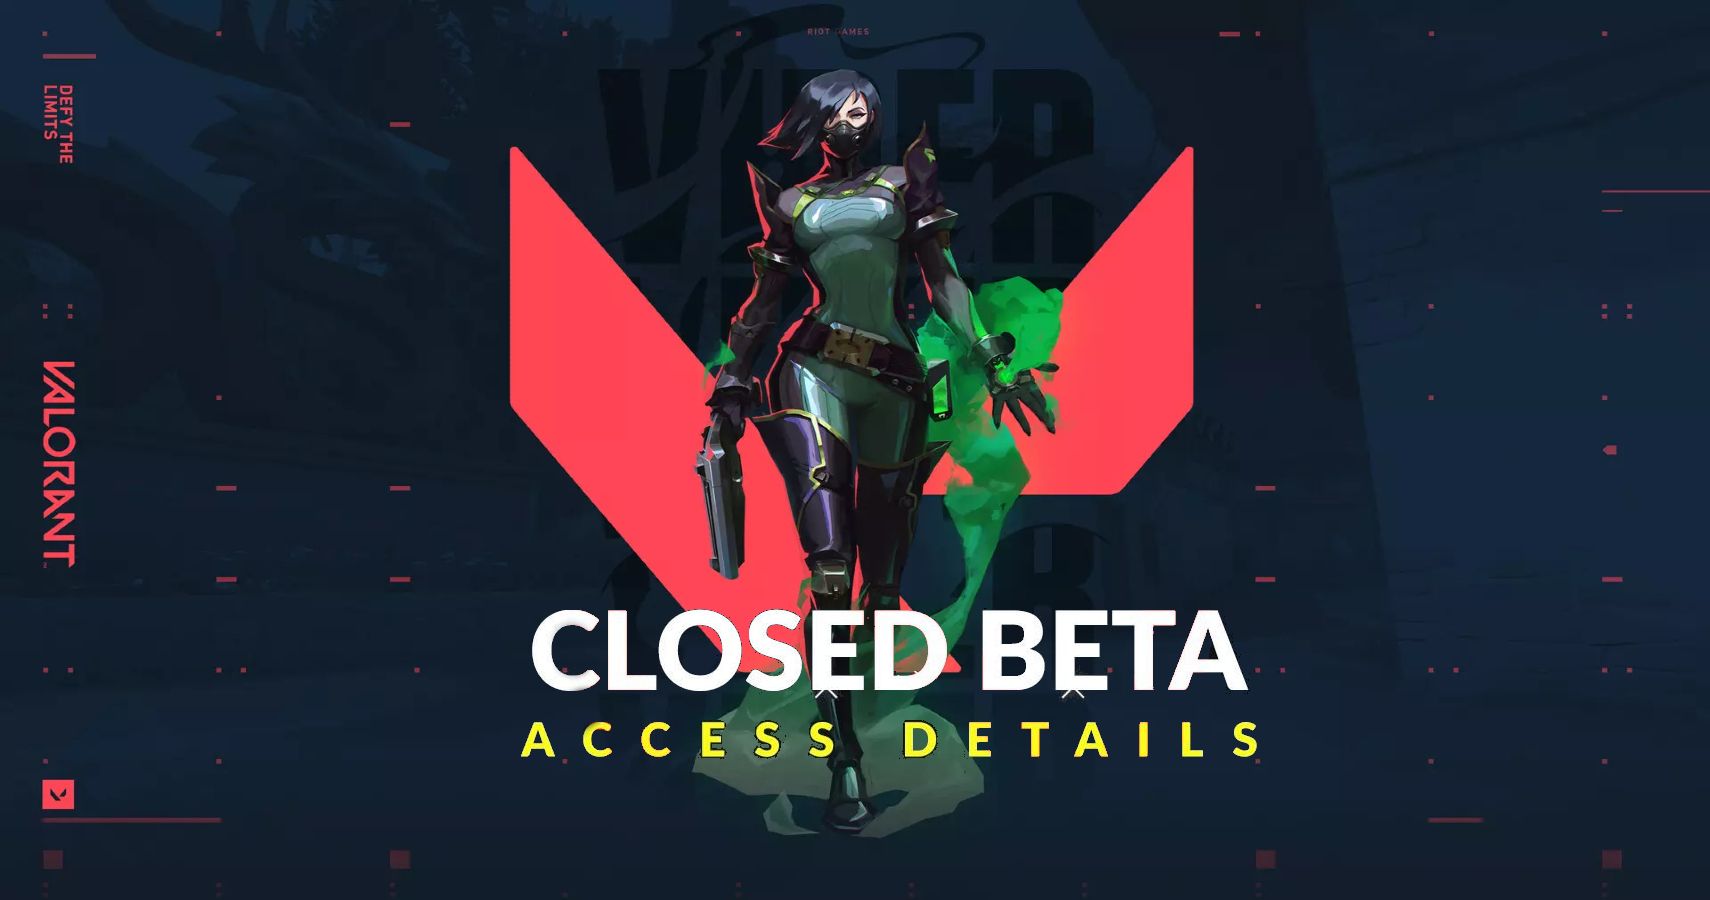 Closed beta